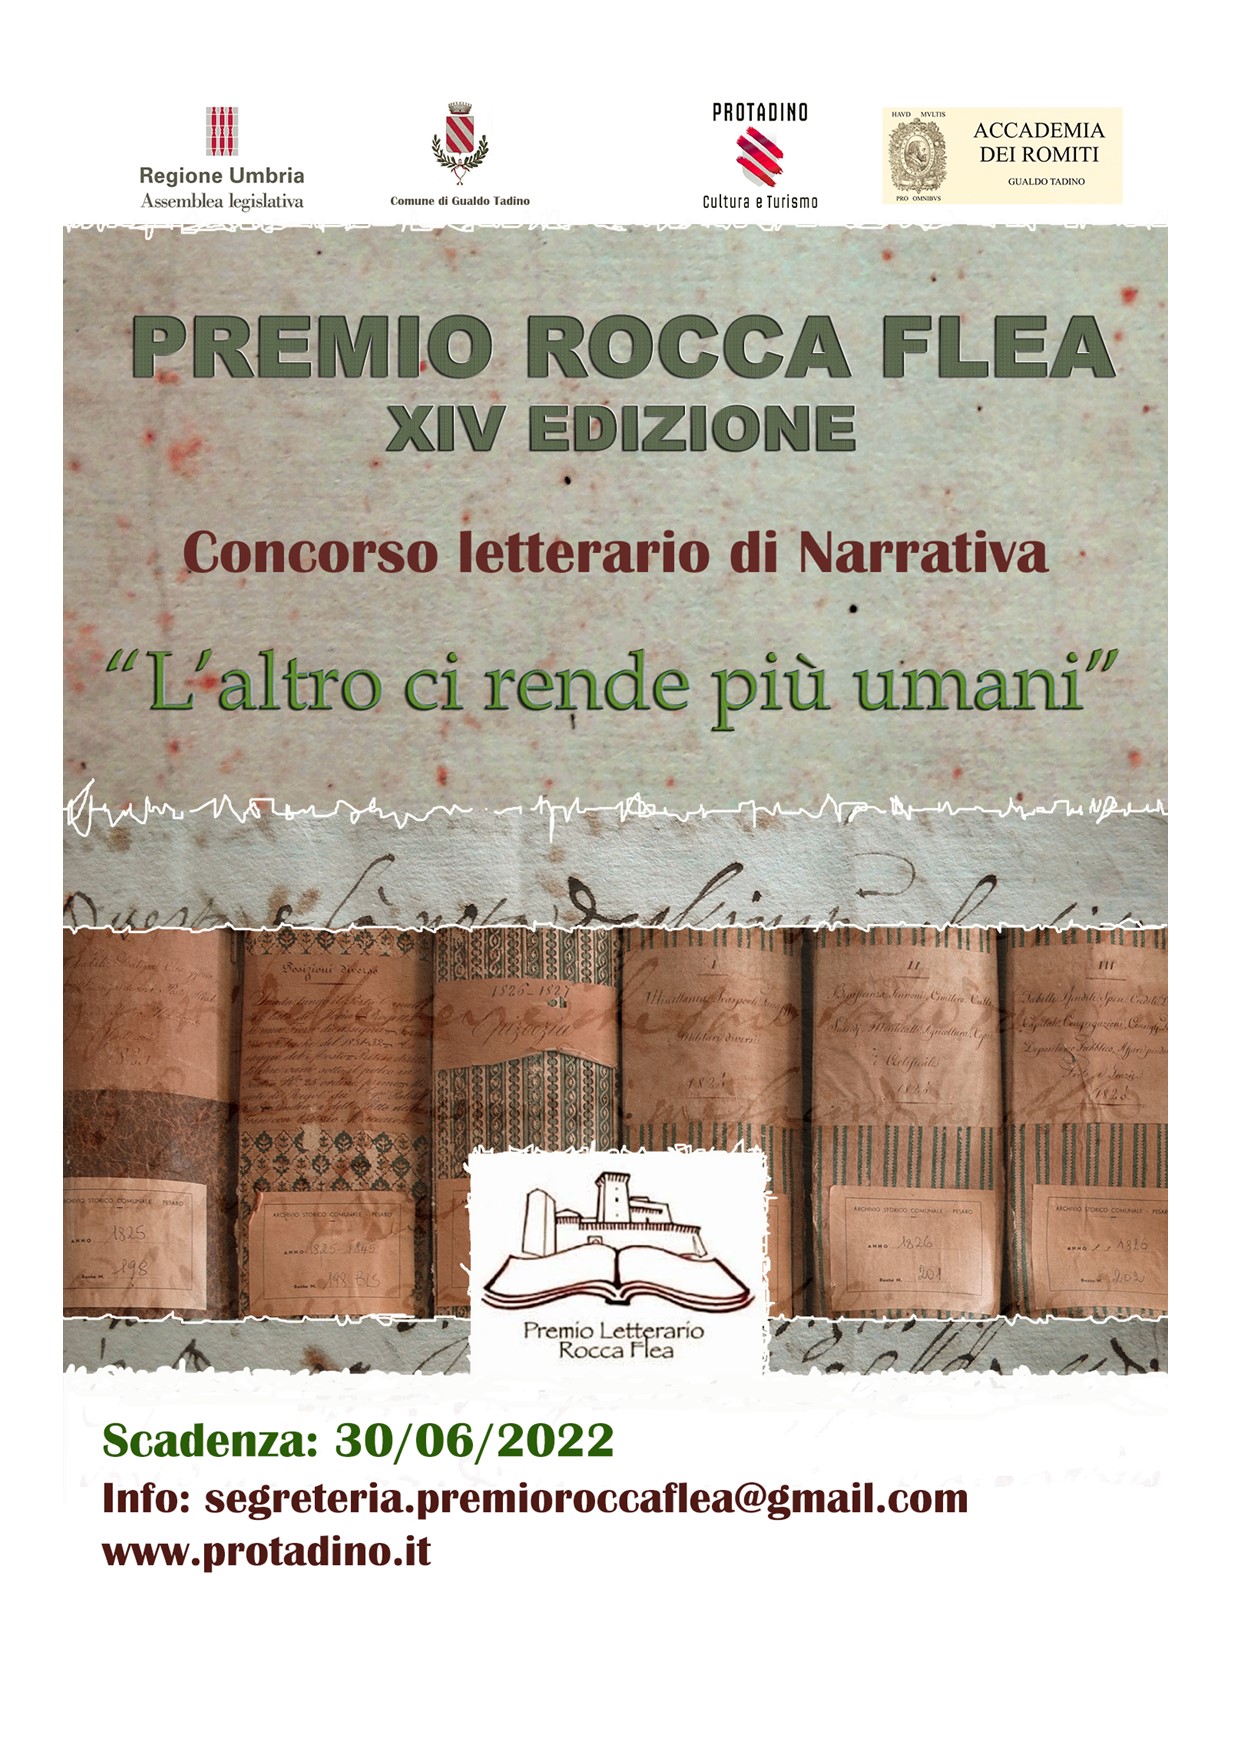 Premio Rocca Flea XIV